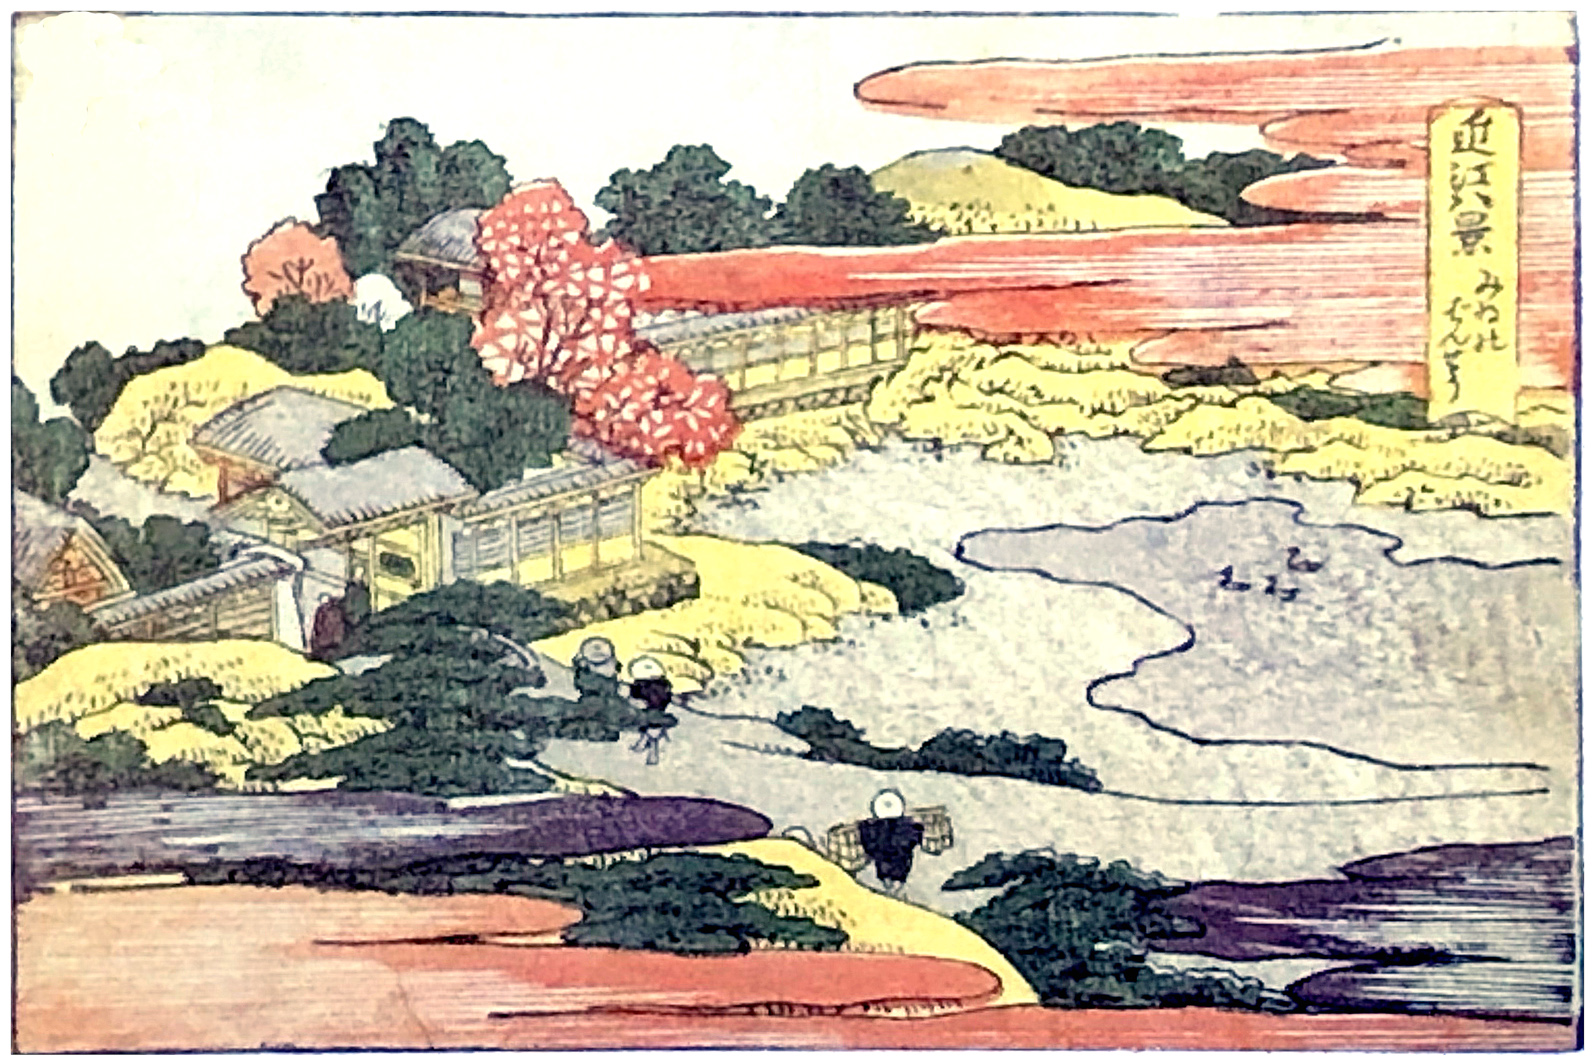 Hokusai - Evening Bell at Mii - 1802 Horizontal Edition